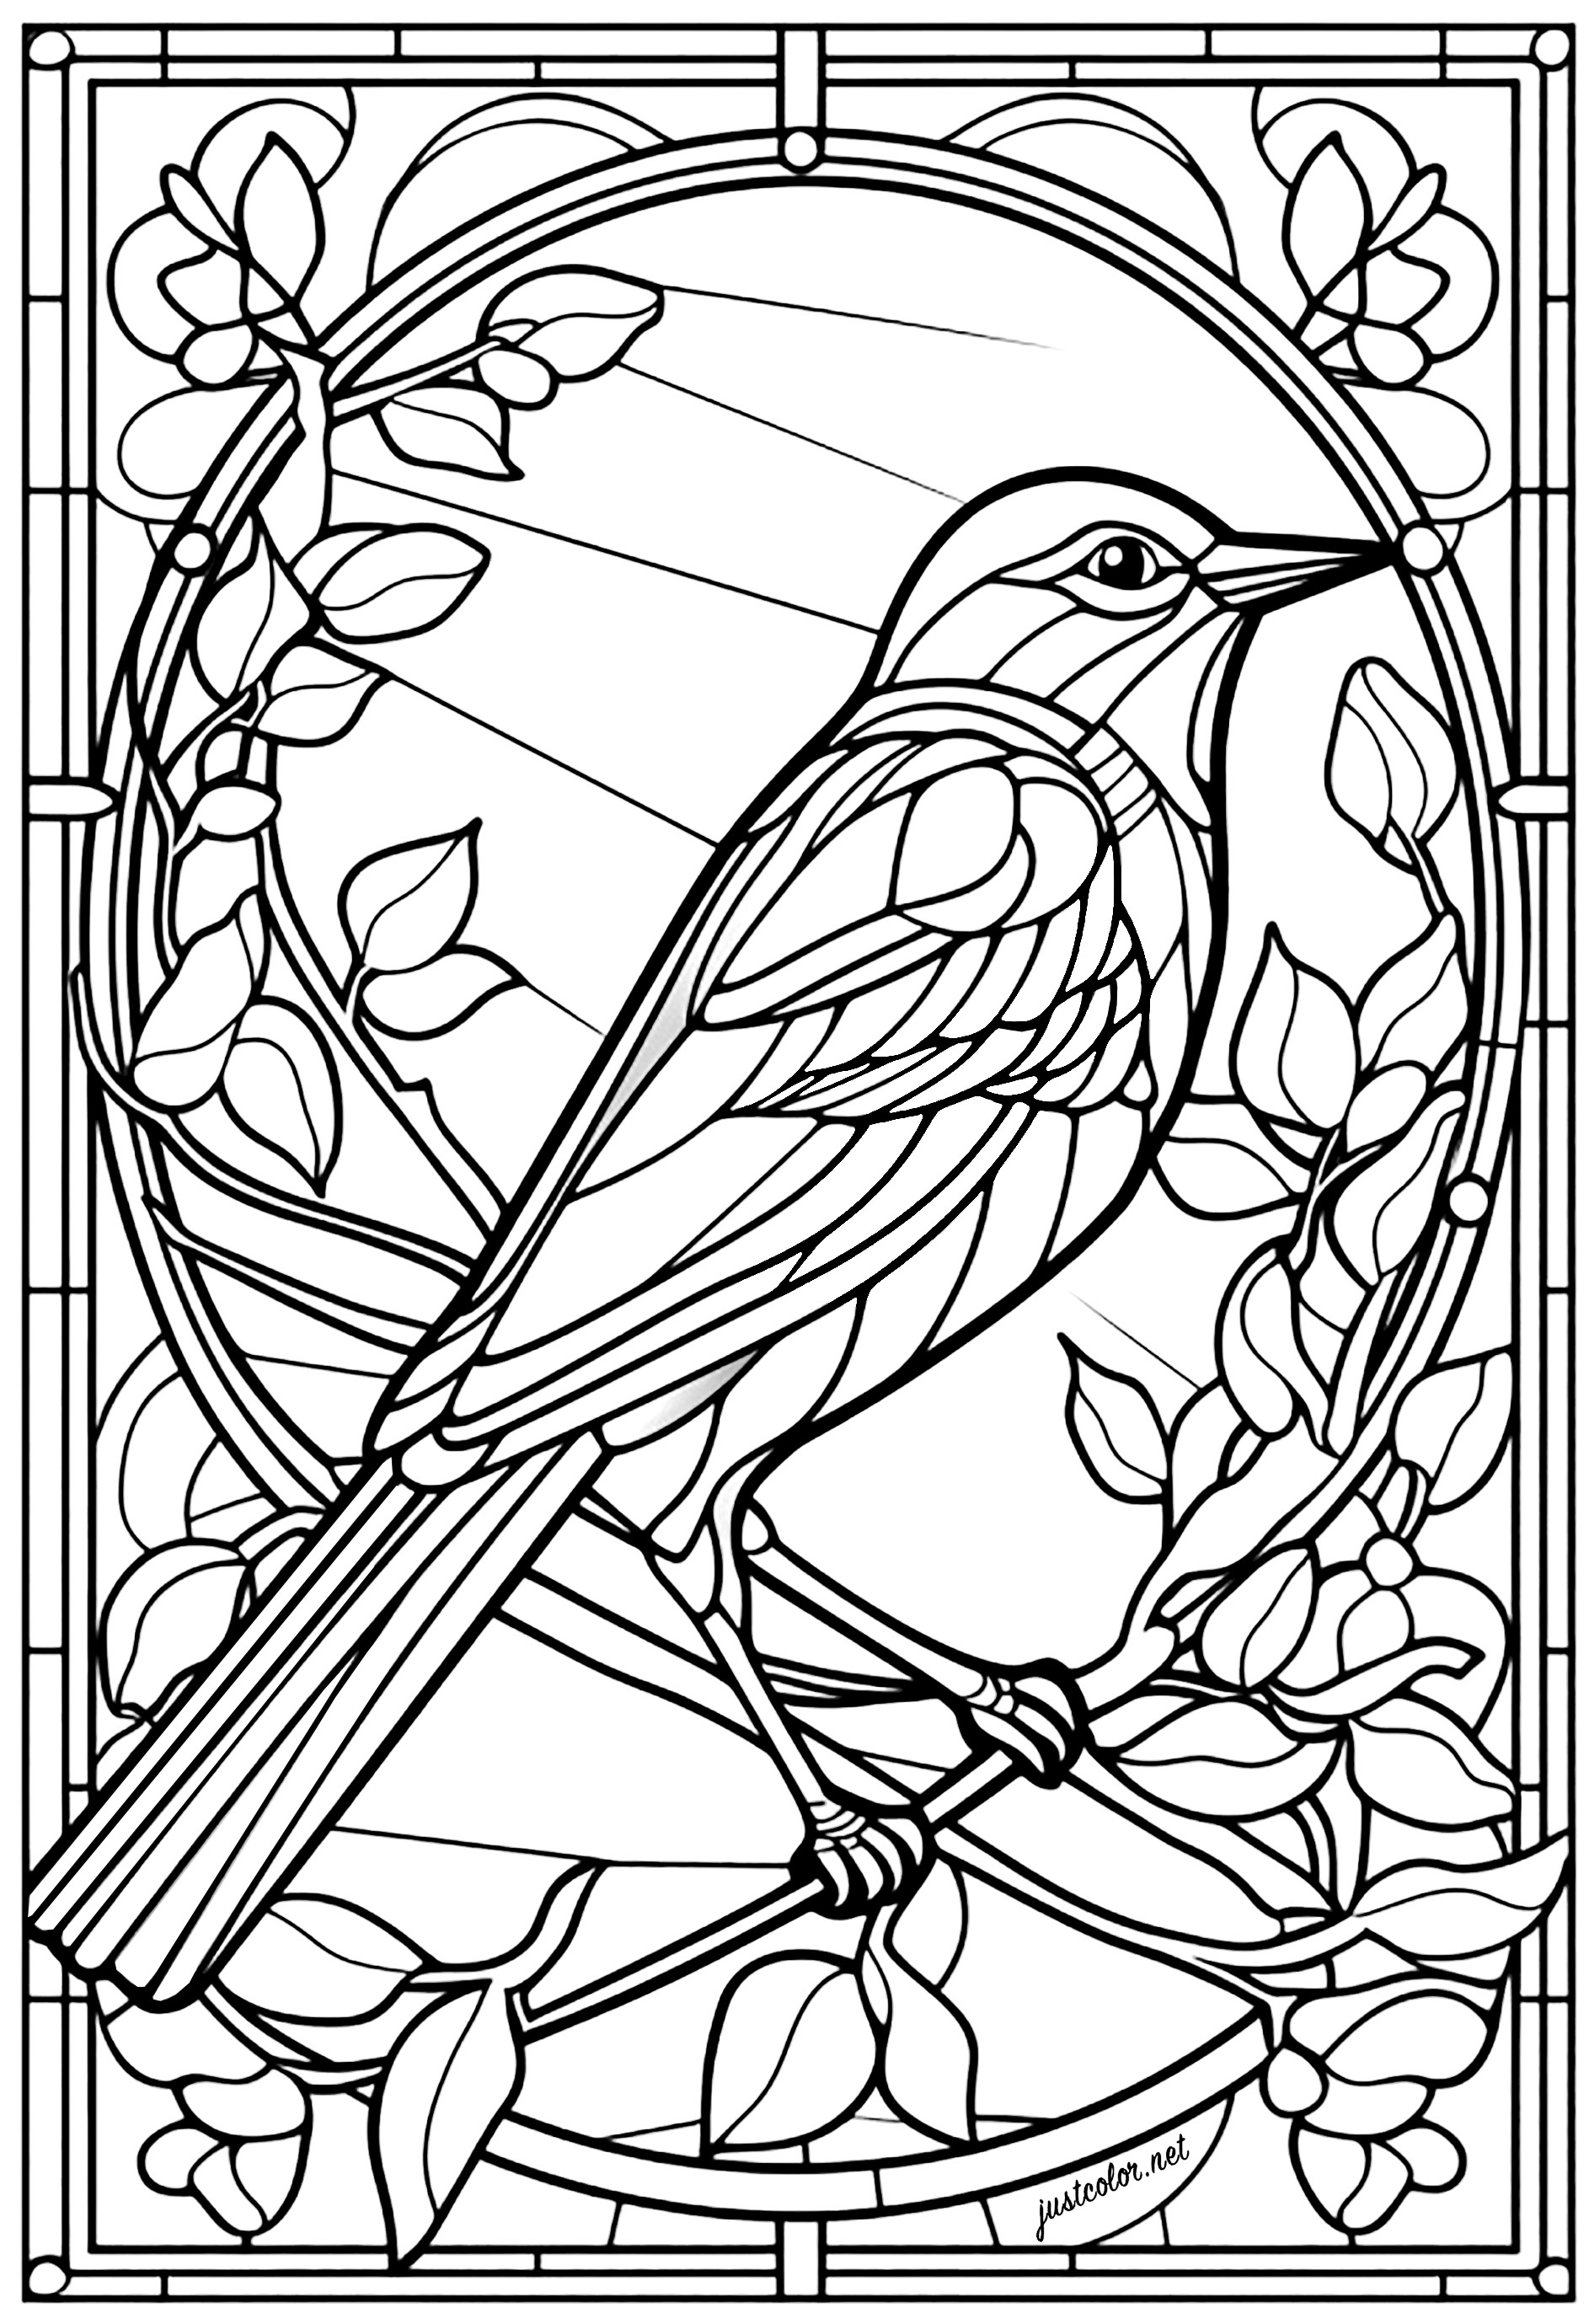 Schöner Vogel und Blumen in einem Buntglasfenster. Dieser Vogel sieht aus wie eine Drossel